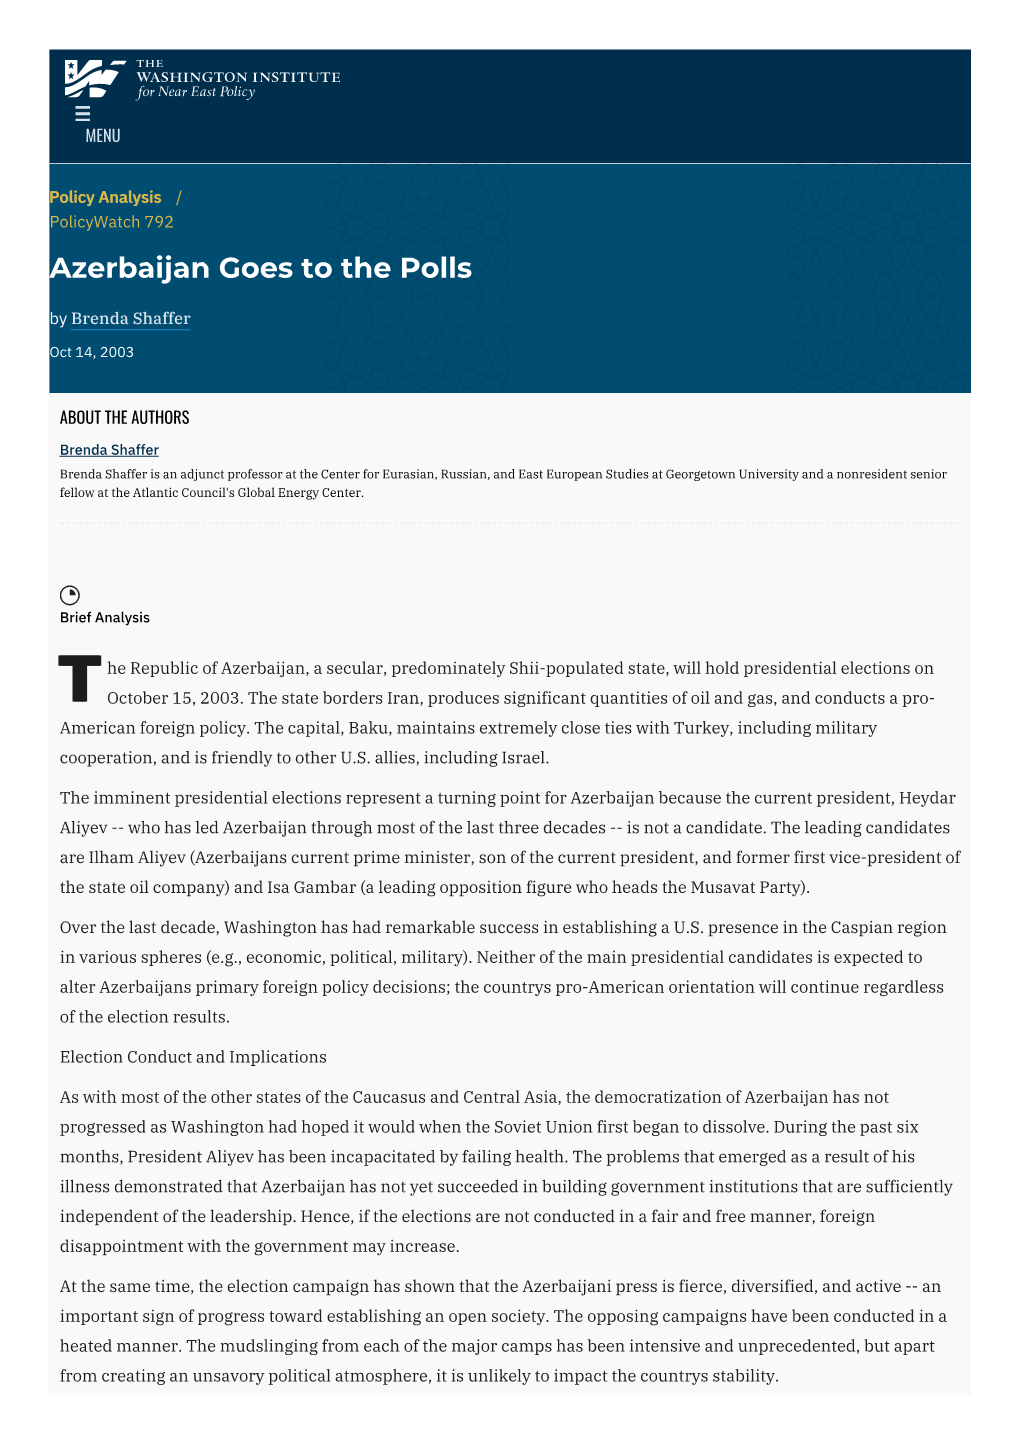 Azerbaijan Goes to the Polls | the Washington Institute